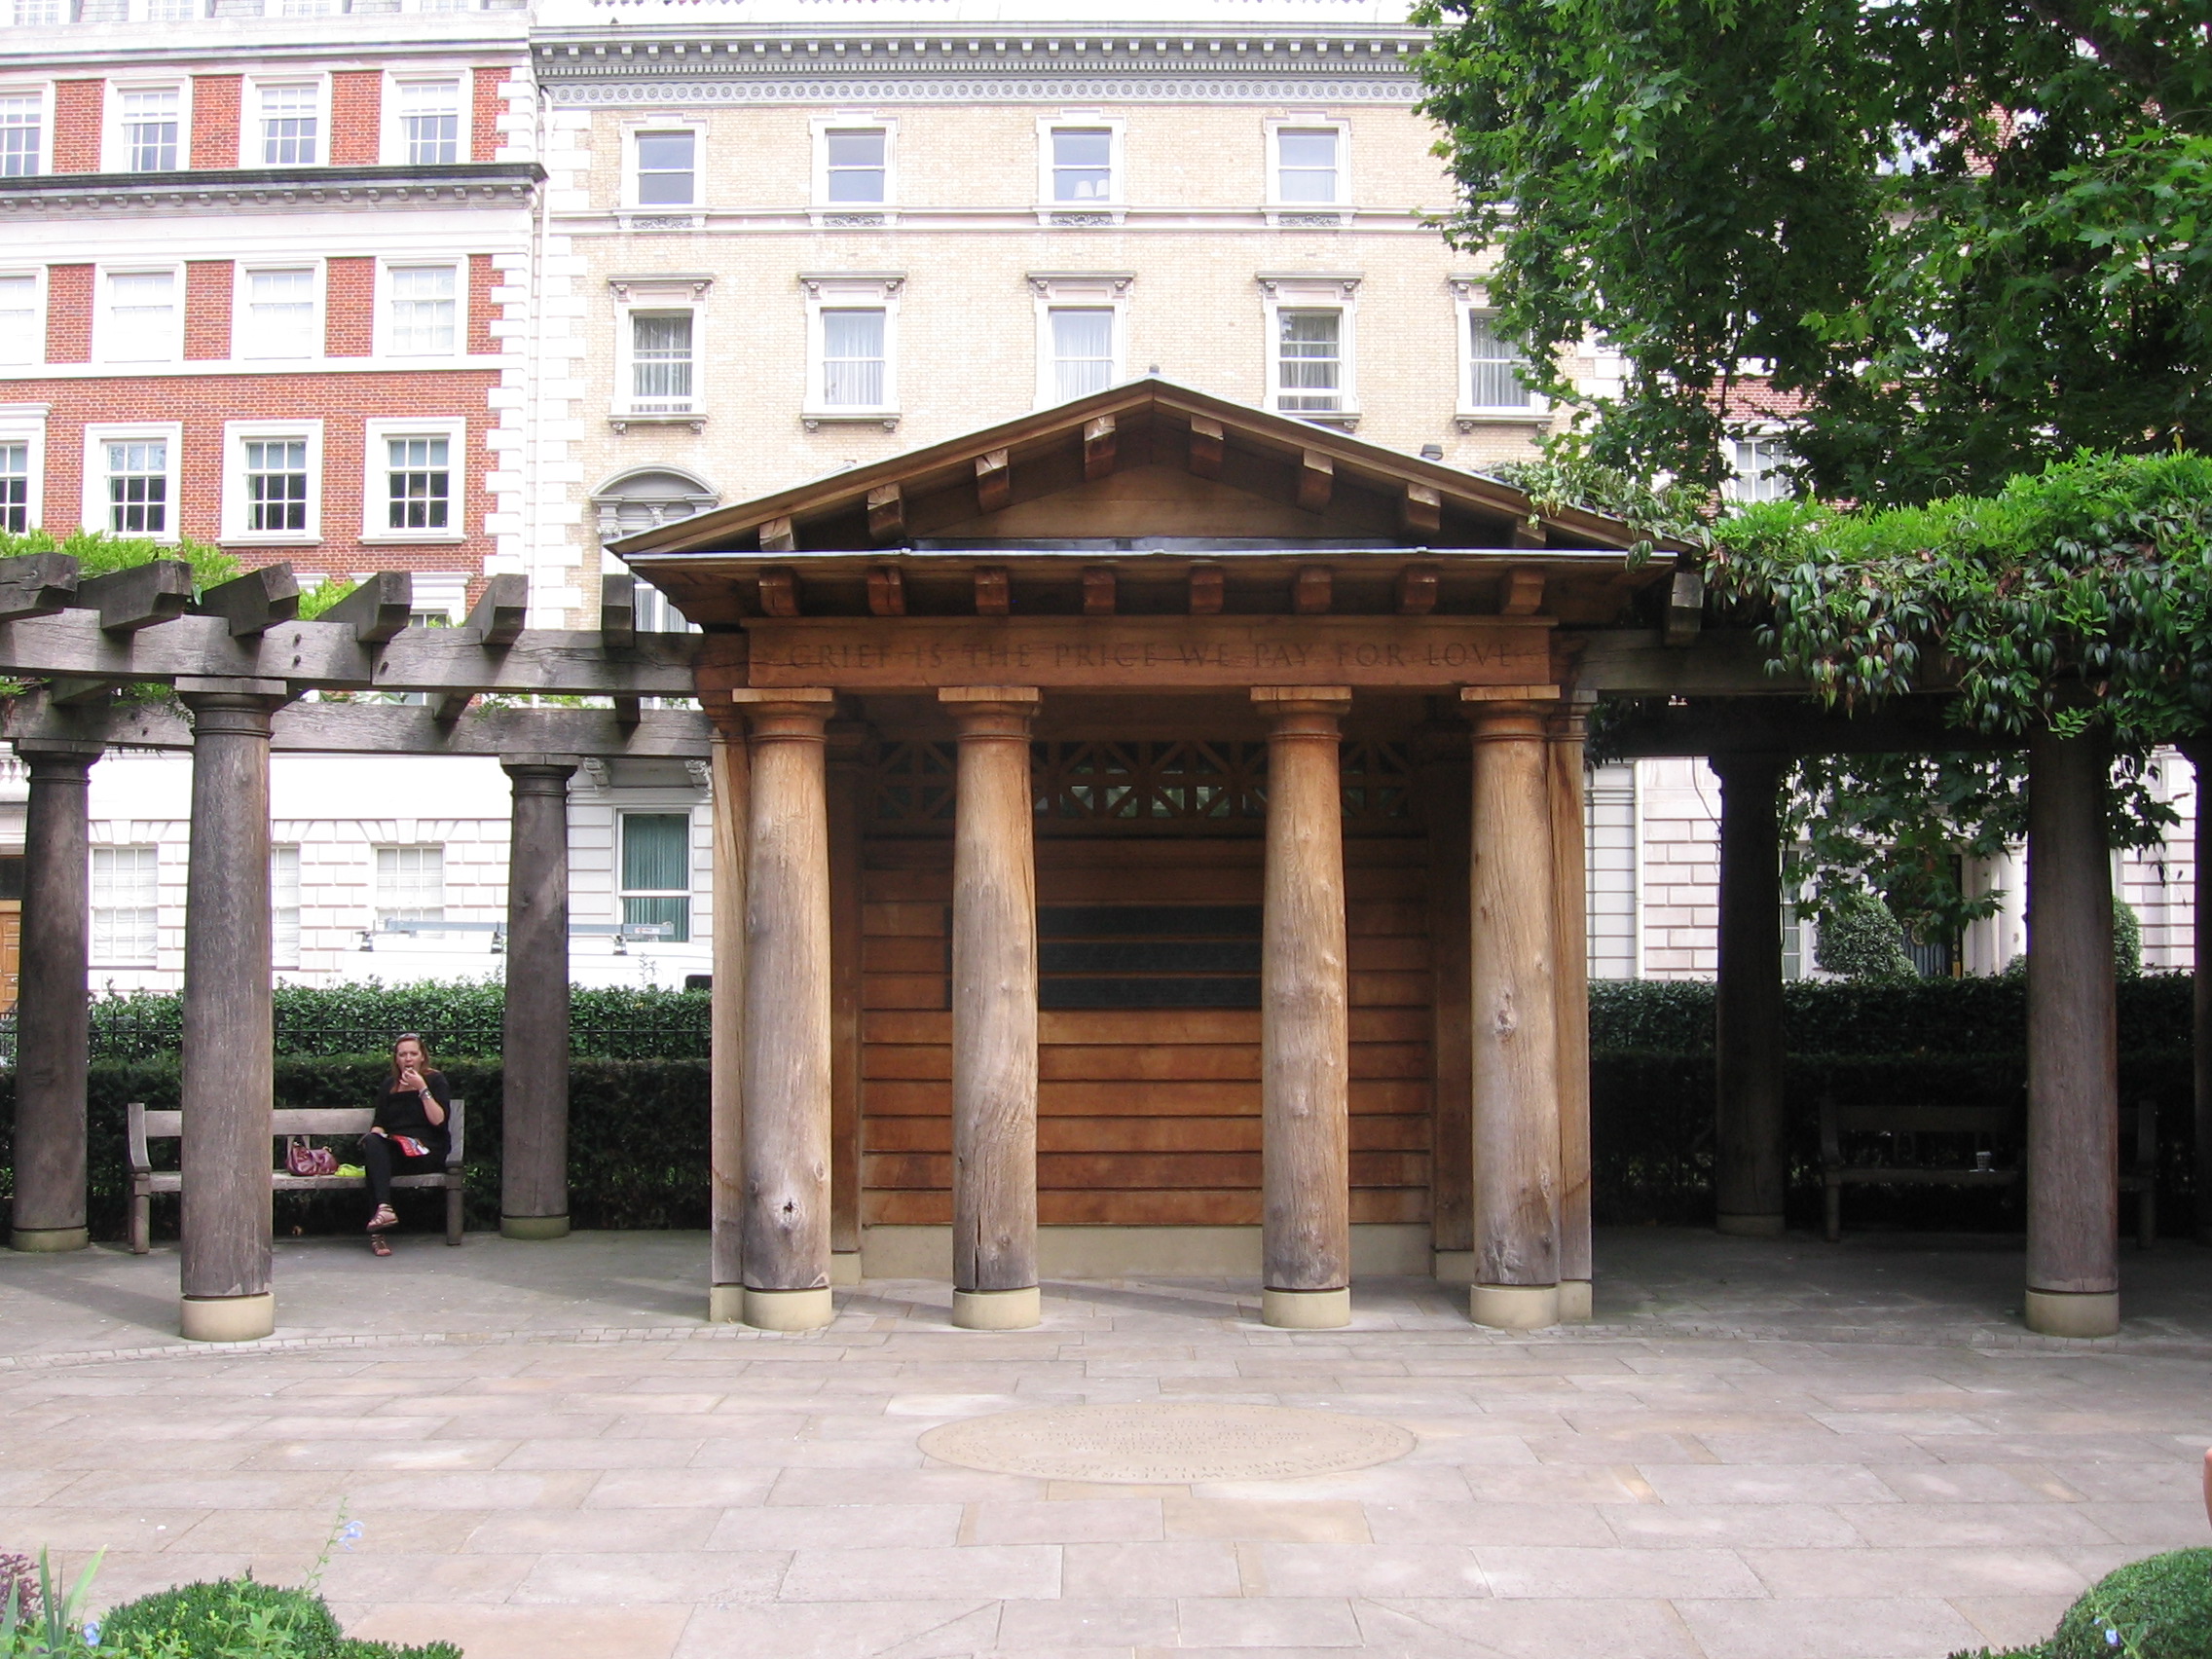 911 Memorial in Grosvenor Square